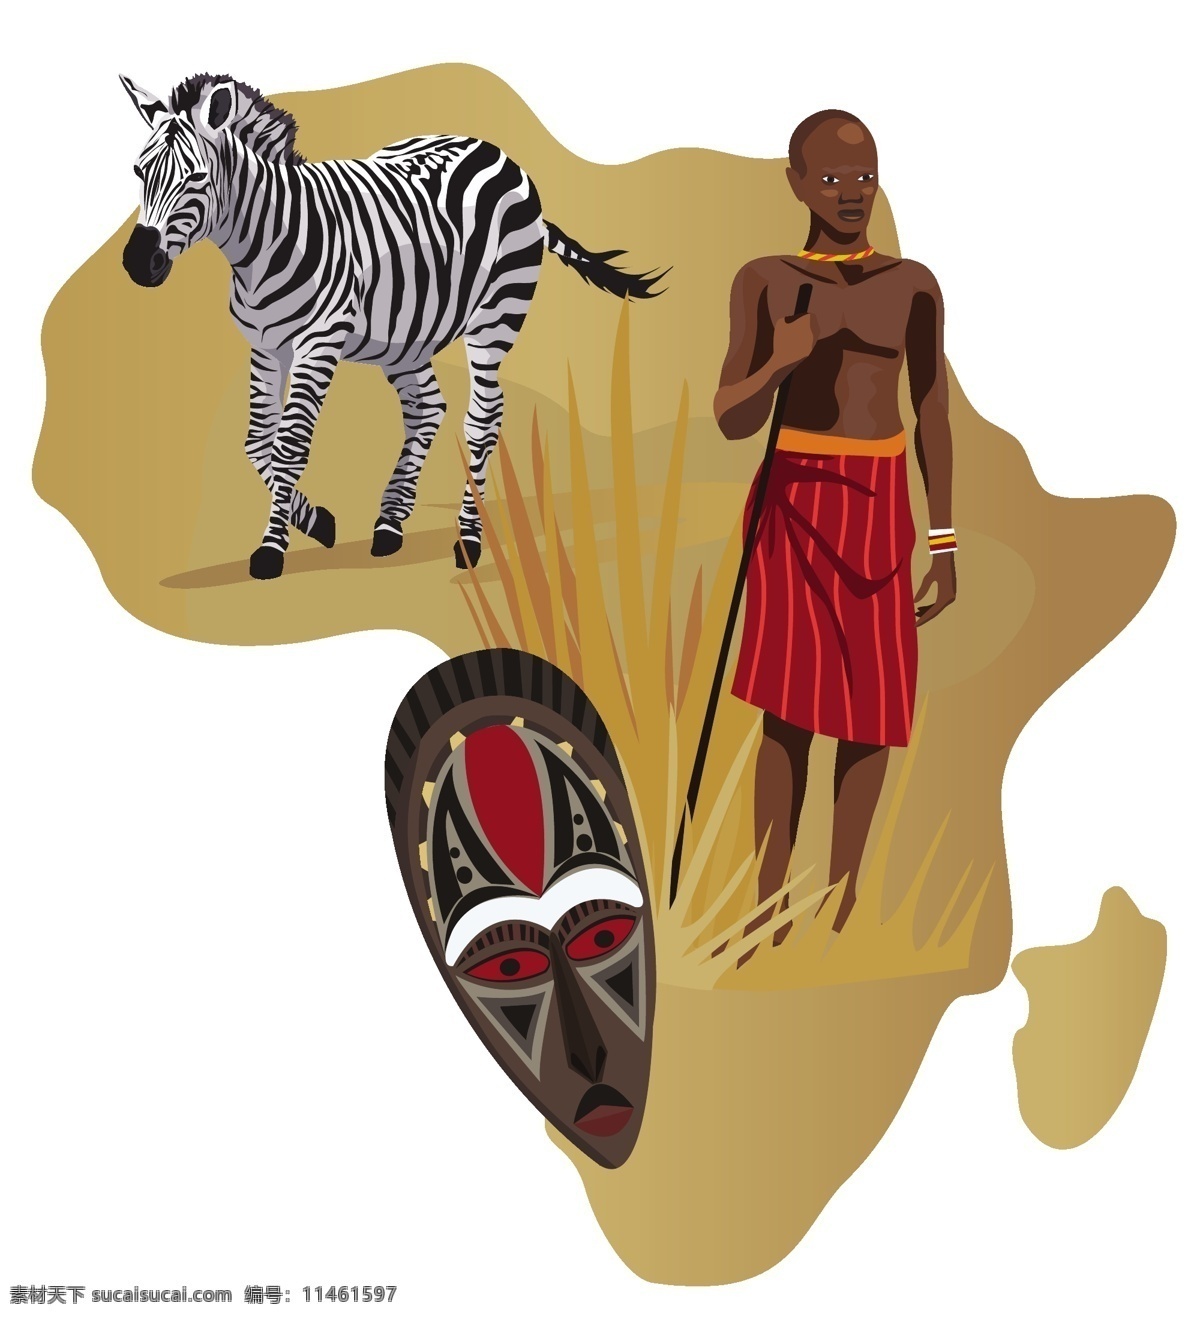 非洲男人 非洲矢量元素 非洲土著 非洲大陆 斑马 面具 脸谱 面剧 非洲大草原 大象 野生动物 民族 风情 非洲 矢量人物 少数民族 矢量